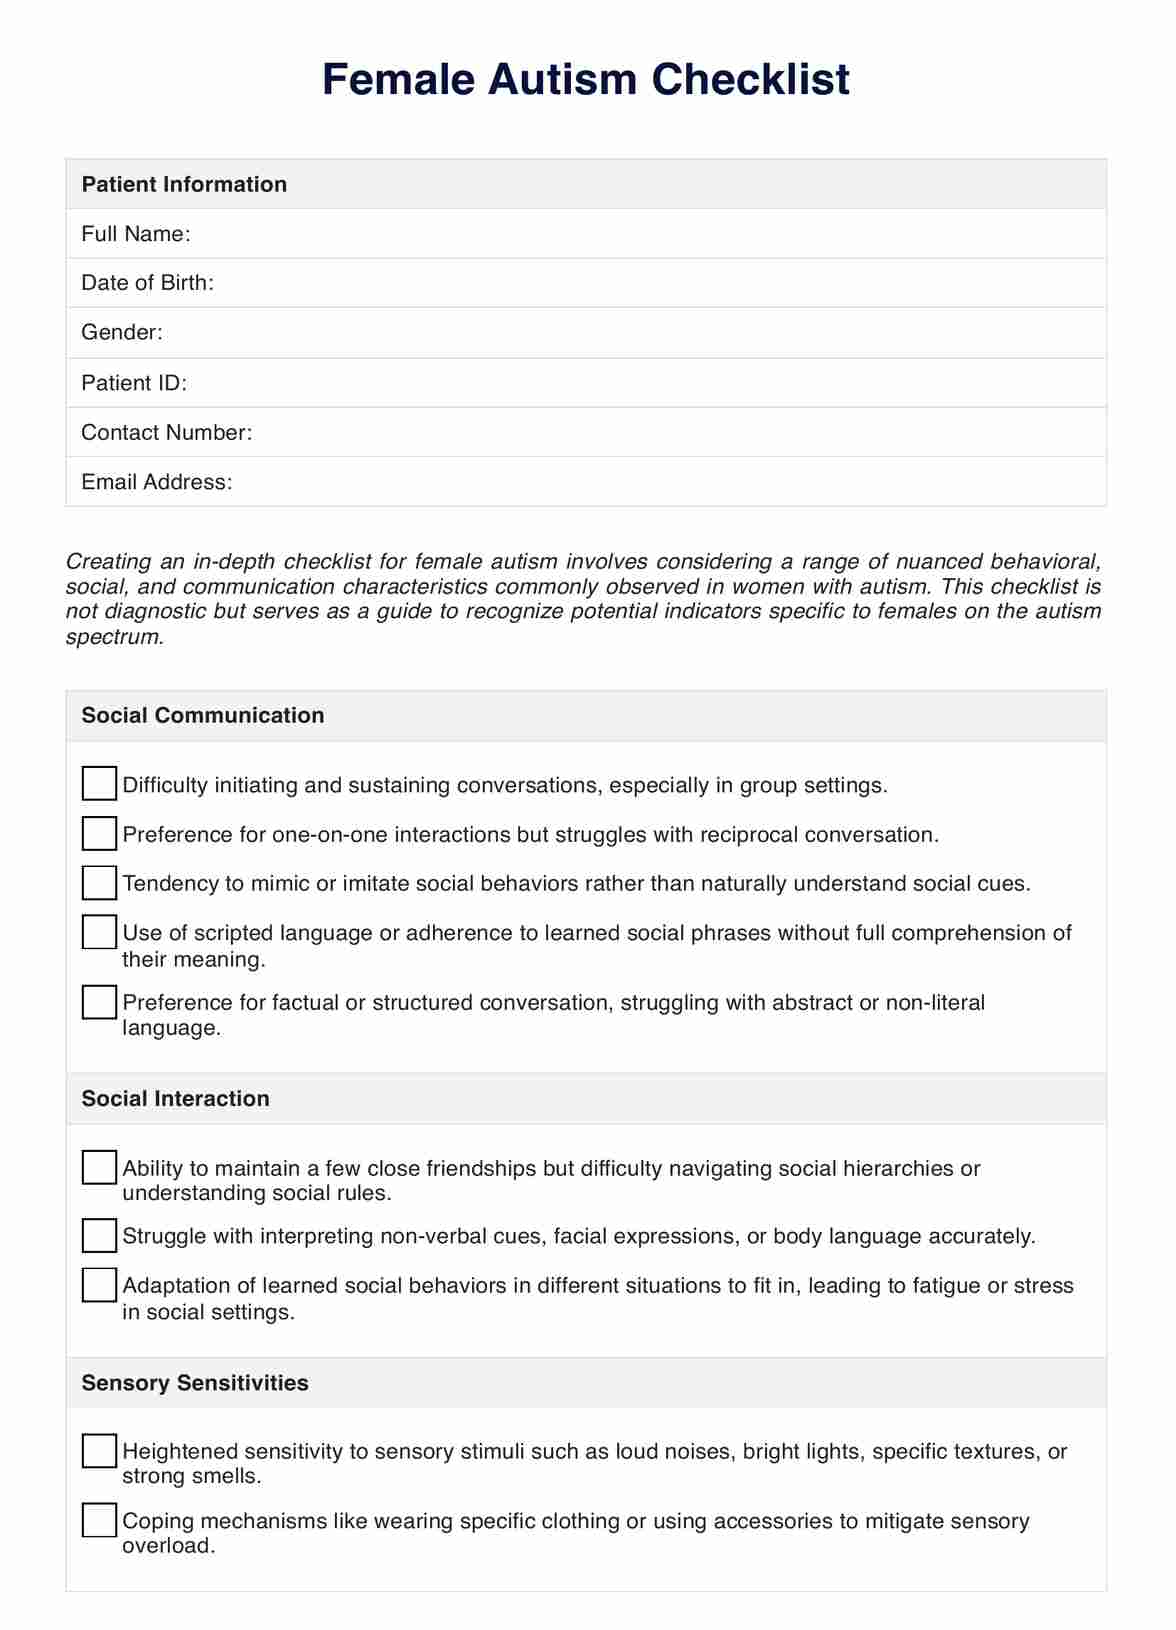 Female Autism Checklist PDF Example